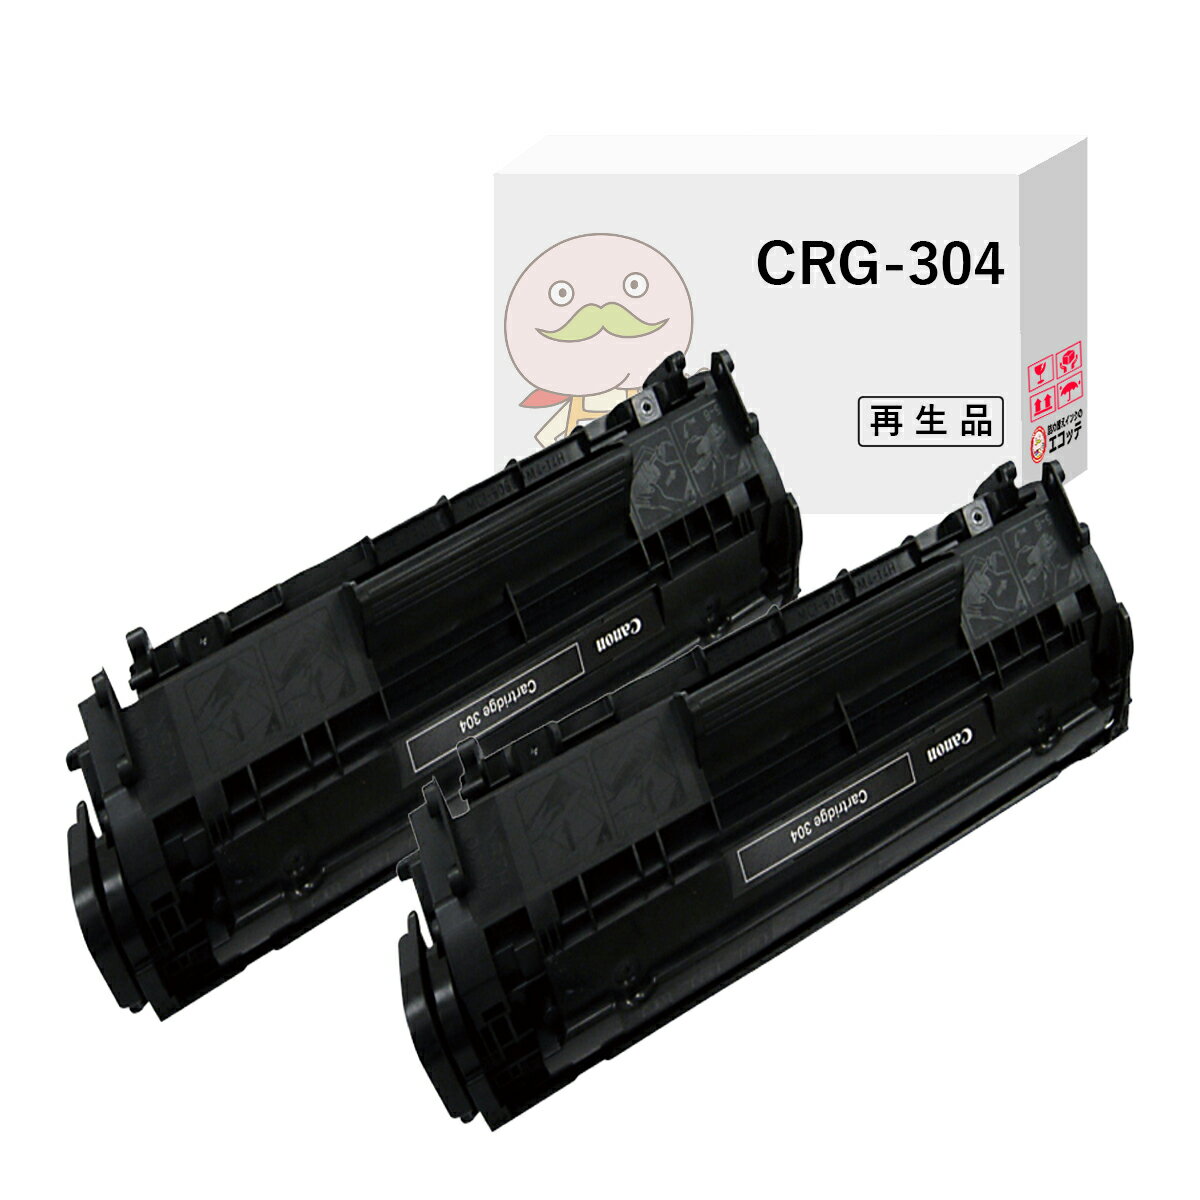 CRG-304 リサイクルトナー ブラック ( 黒 ) 2本セット Canon ( キヤノン / キャノン )用 ┃ リサイクルトナー キャノン Satera サテラ MF4680 MF4270 MF4150 MF4130 MF4120